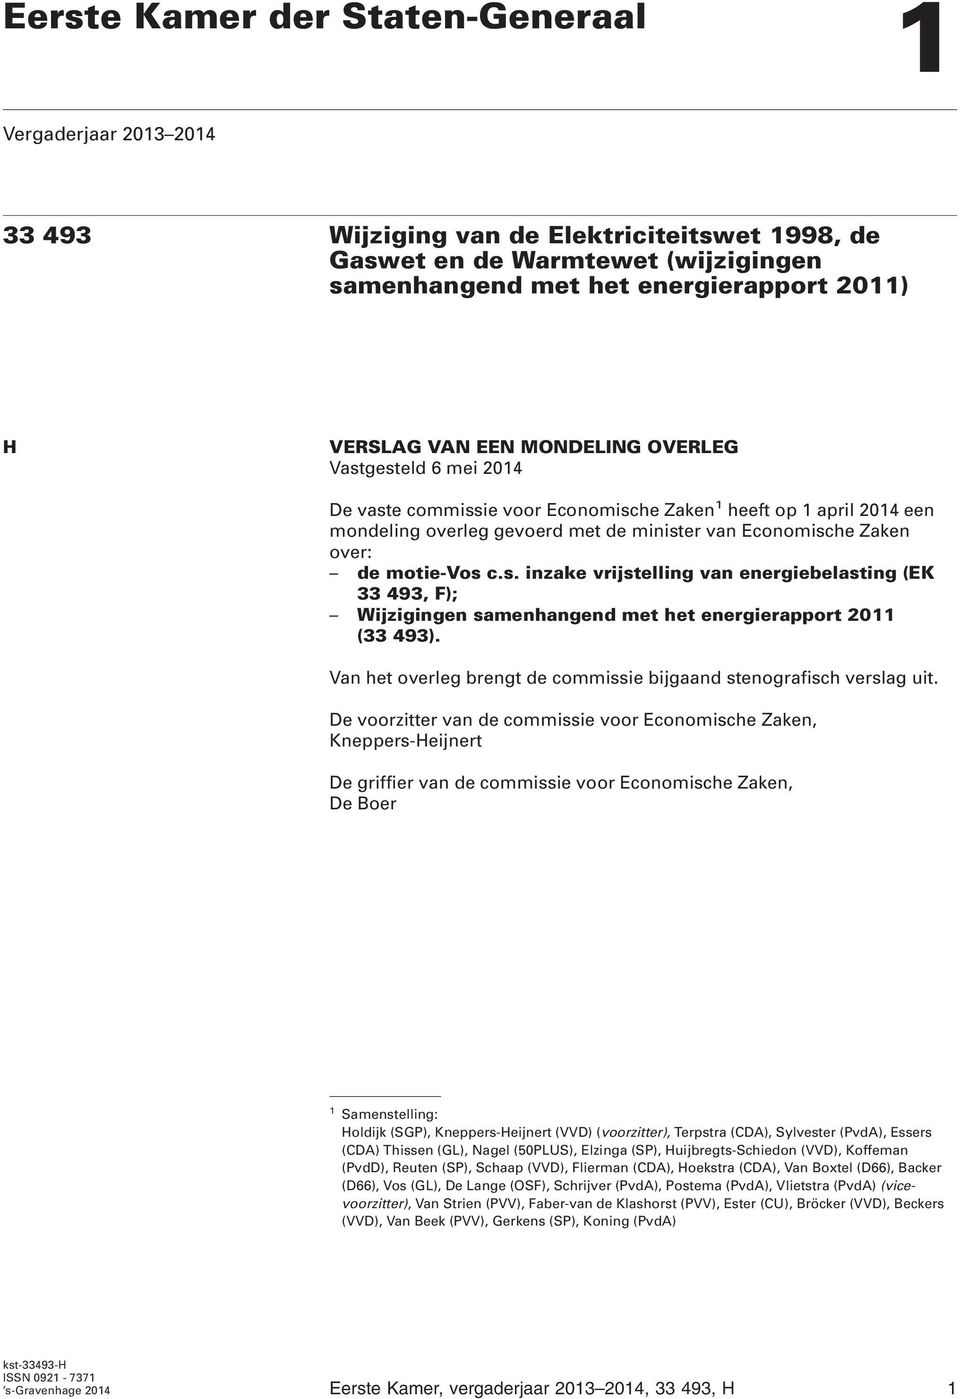 motie-vos c.s. inzake vrijstelling van energiebelasting (EK 33 493, F); Wijzigingen samenhangend met het energierapport 2011 (33 493).